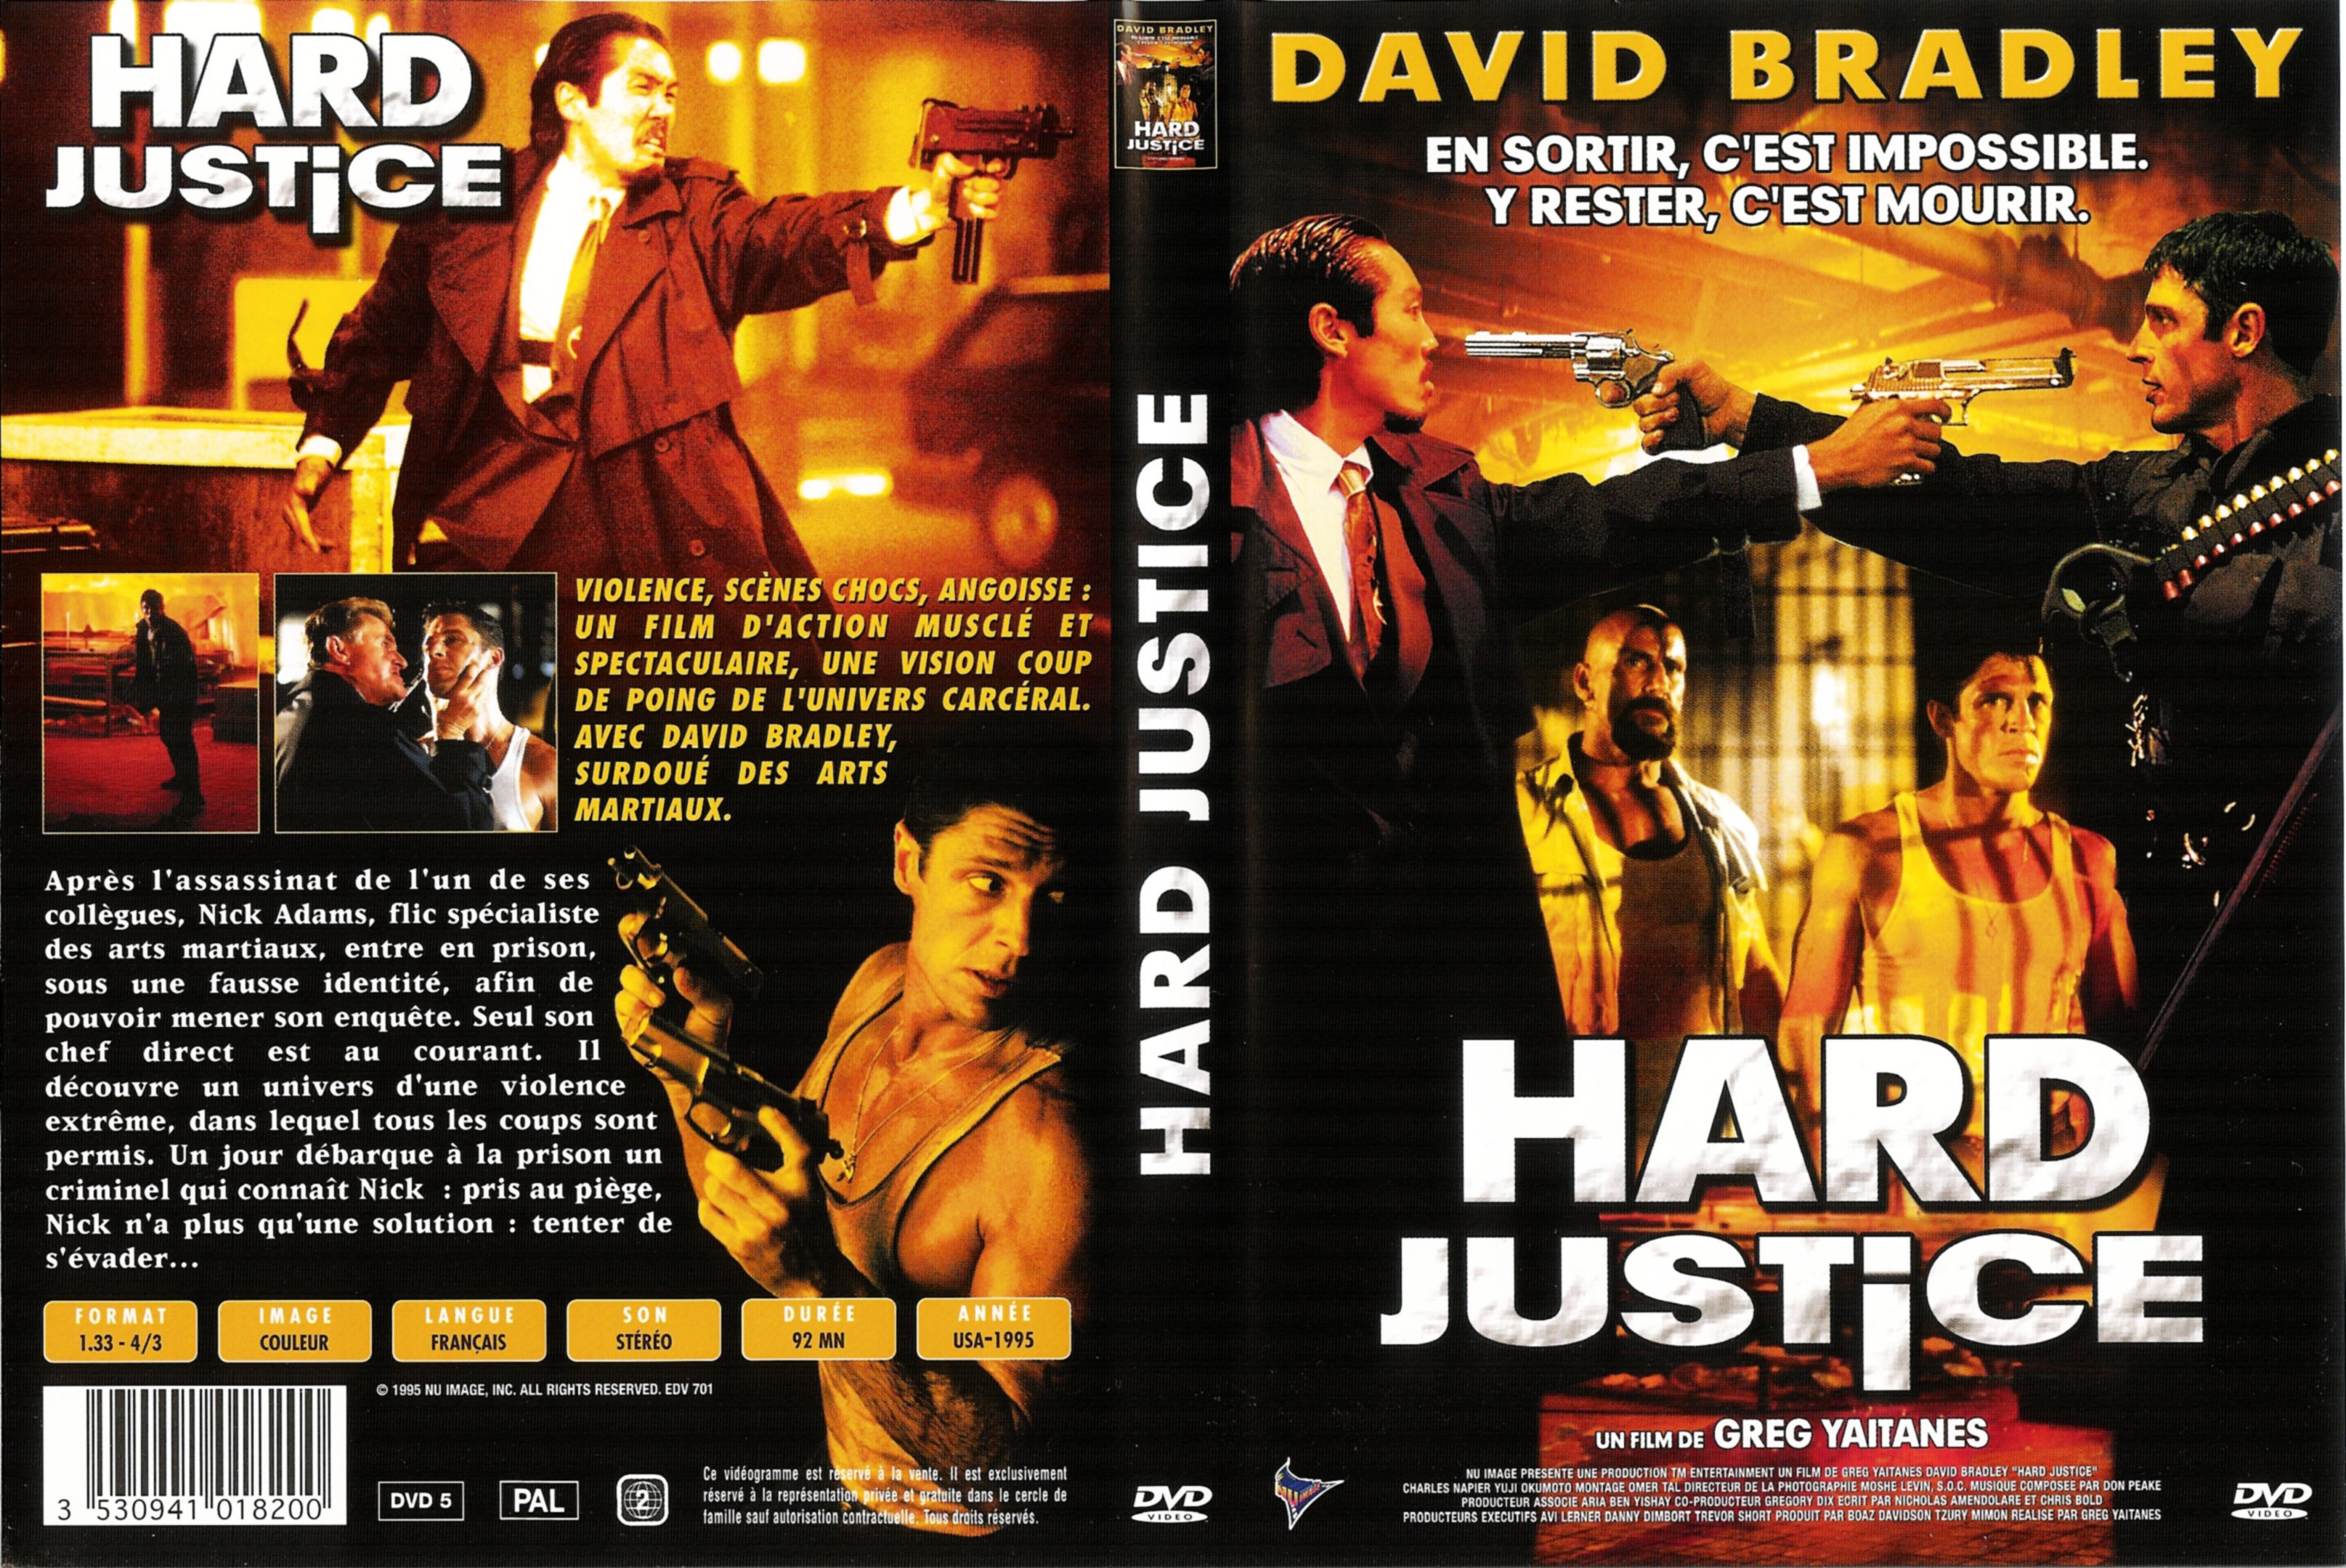 Jaquette DVD Hard justice v2